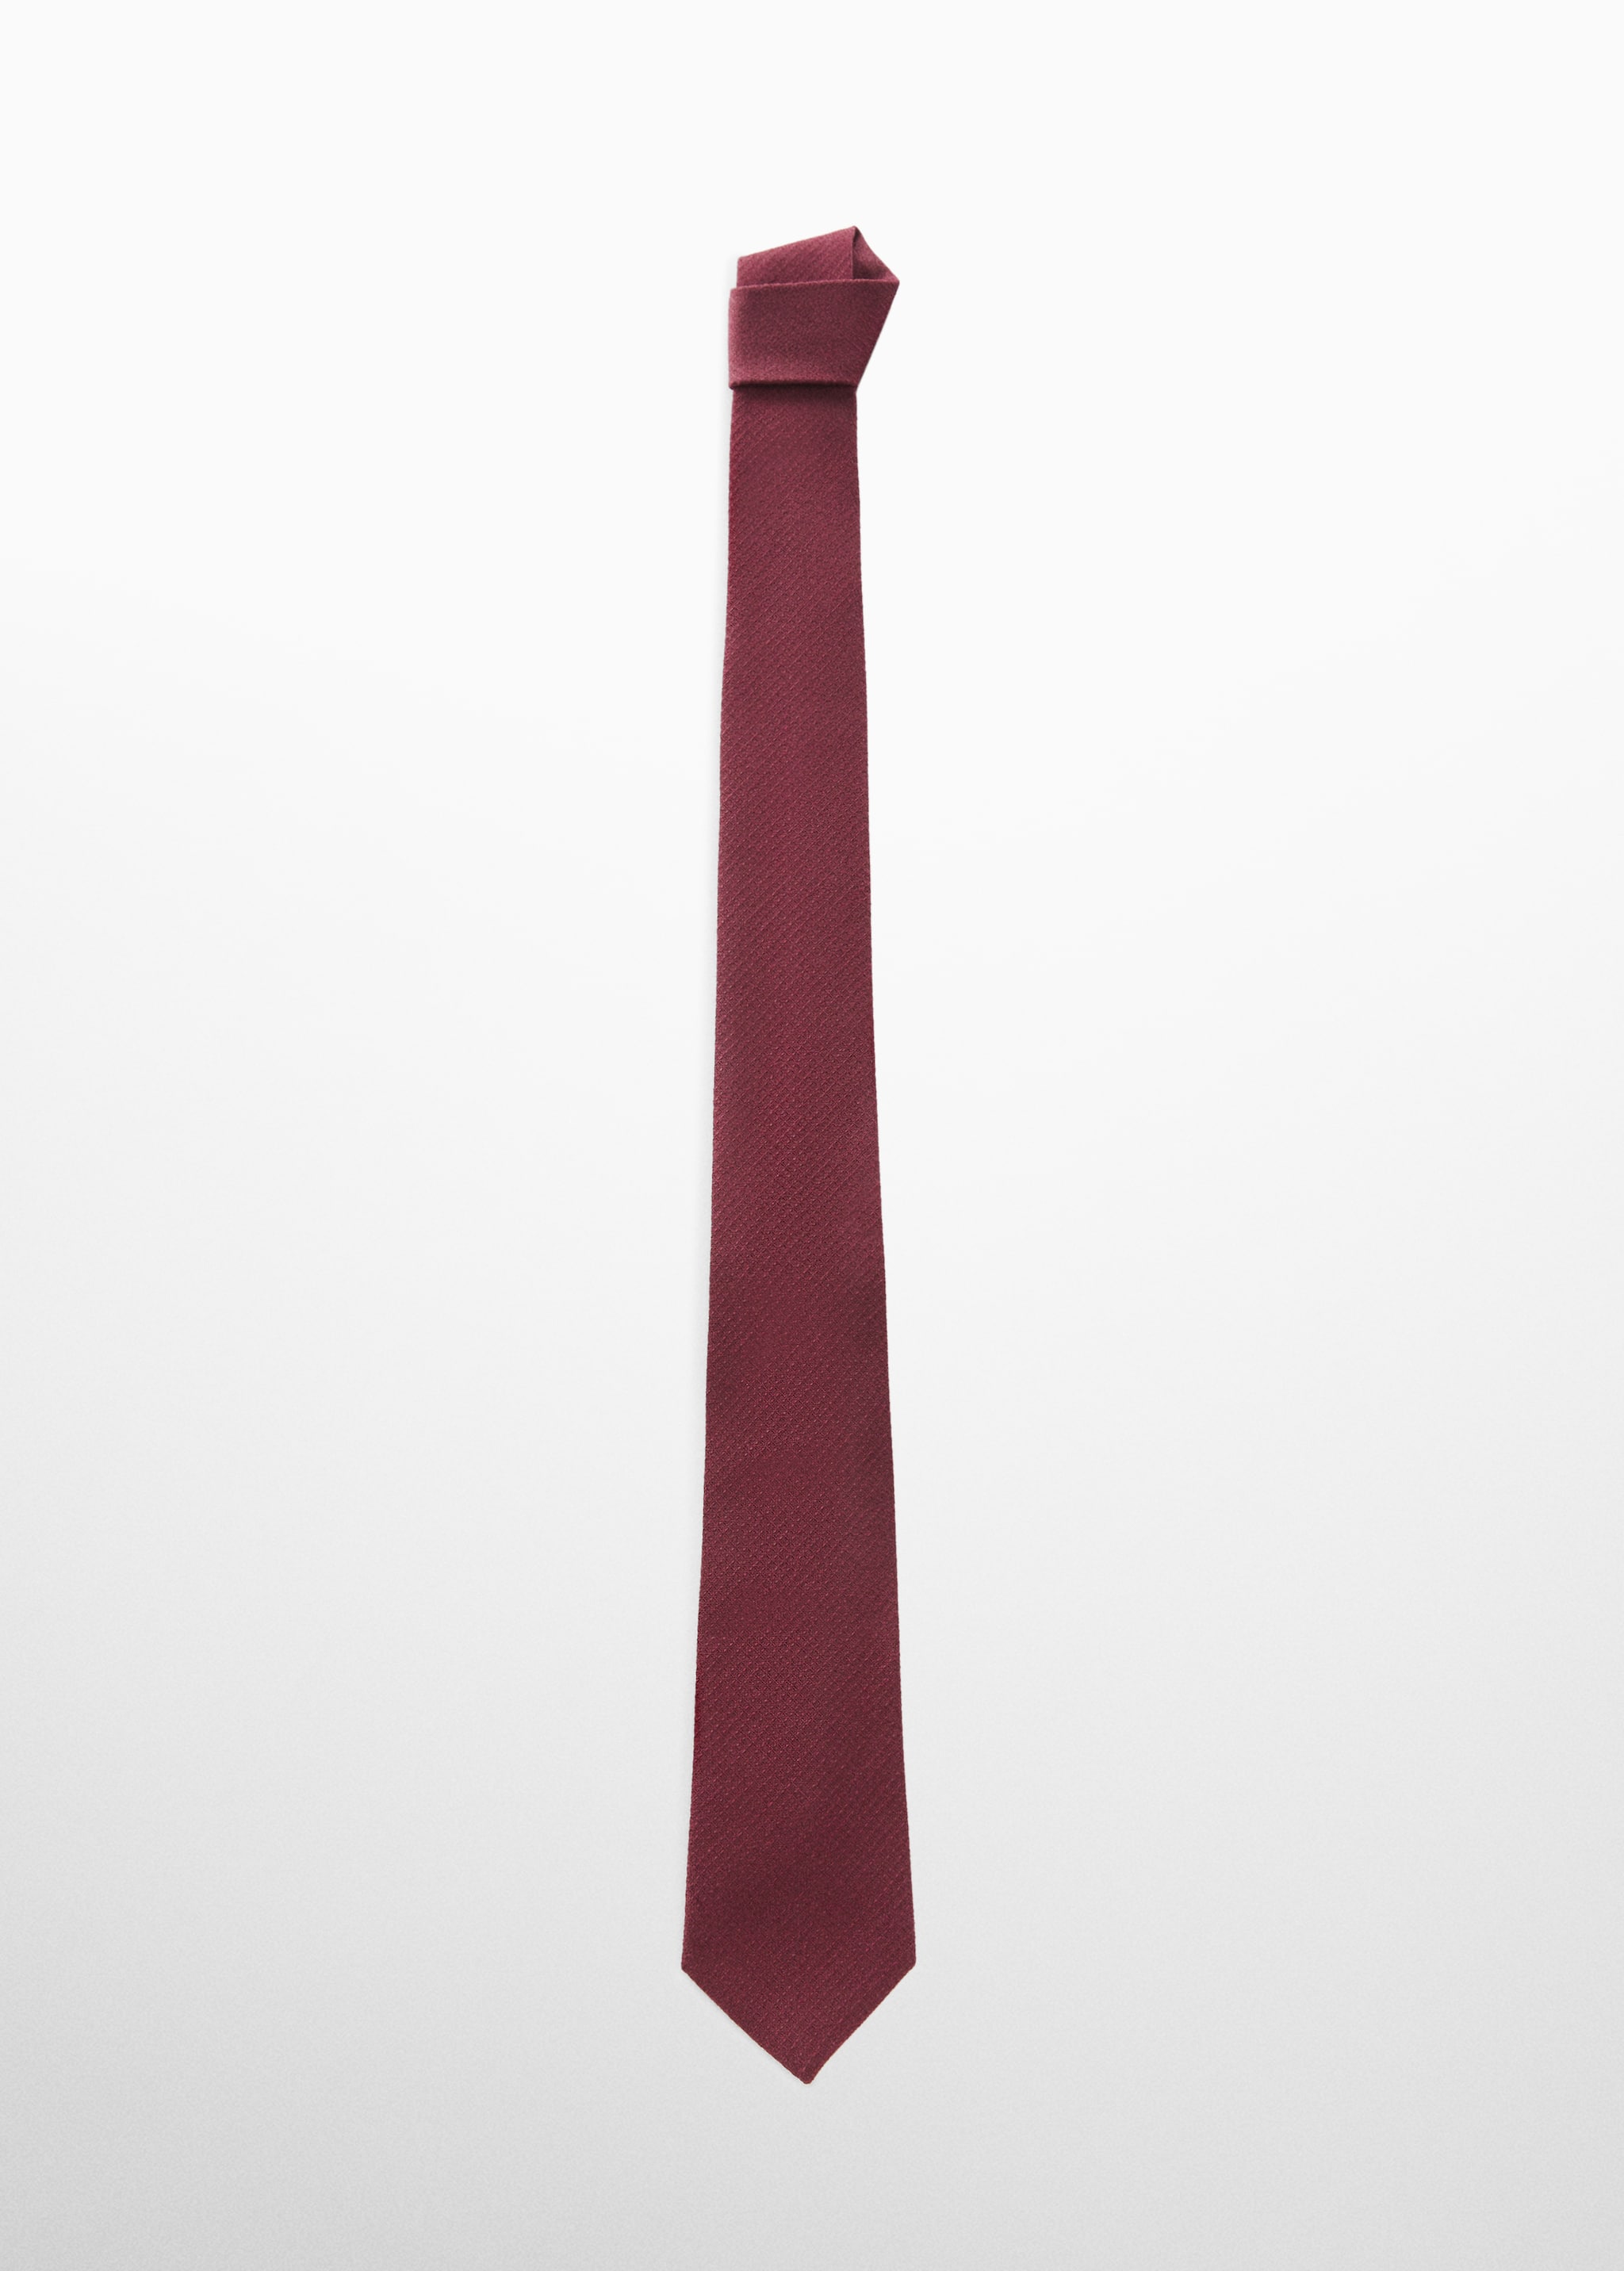 Cravate structurée coton - Article sans modèle